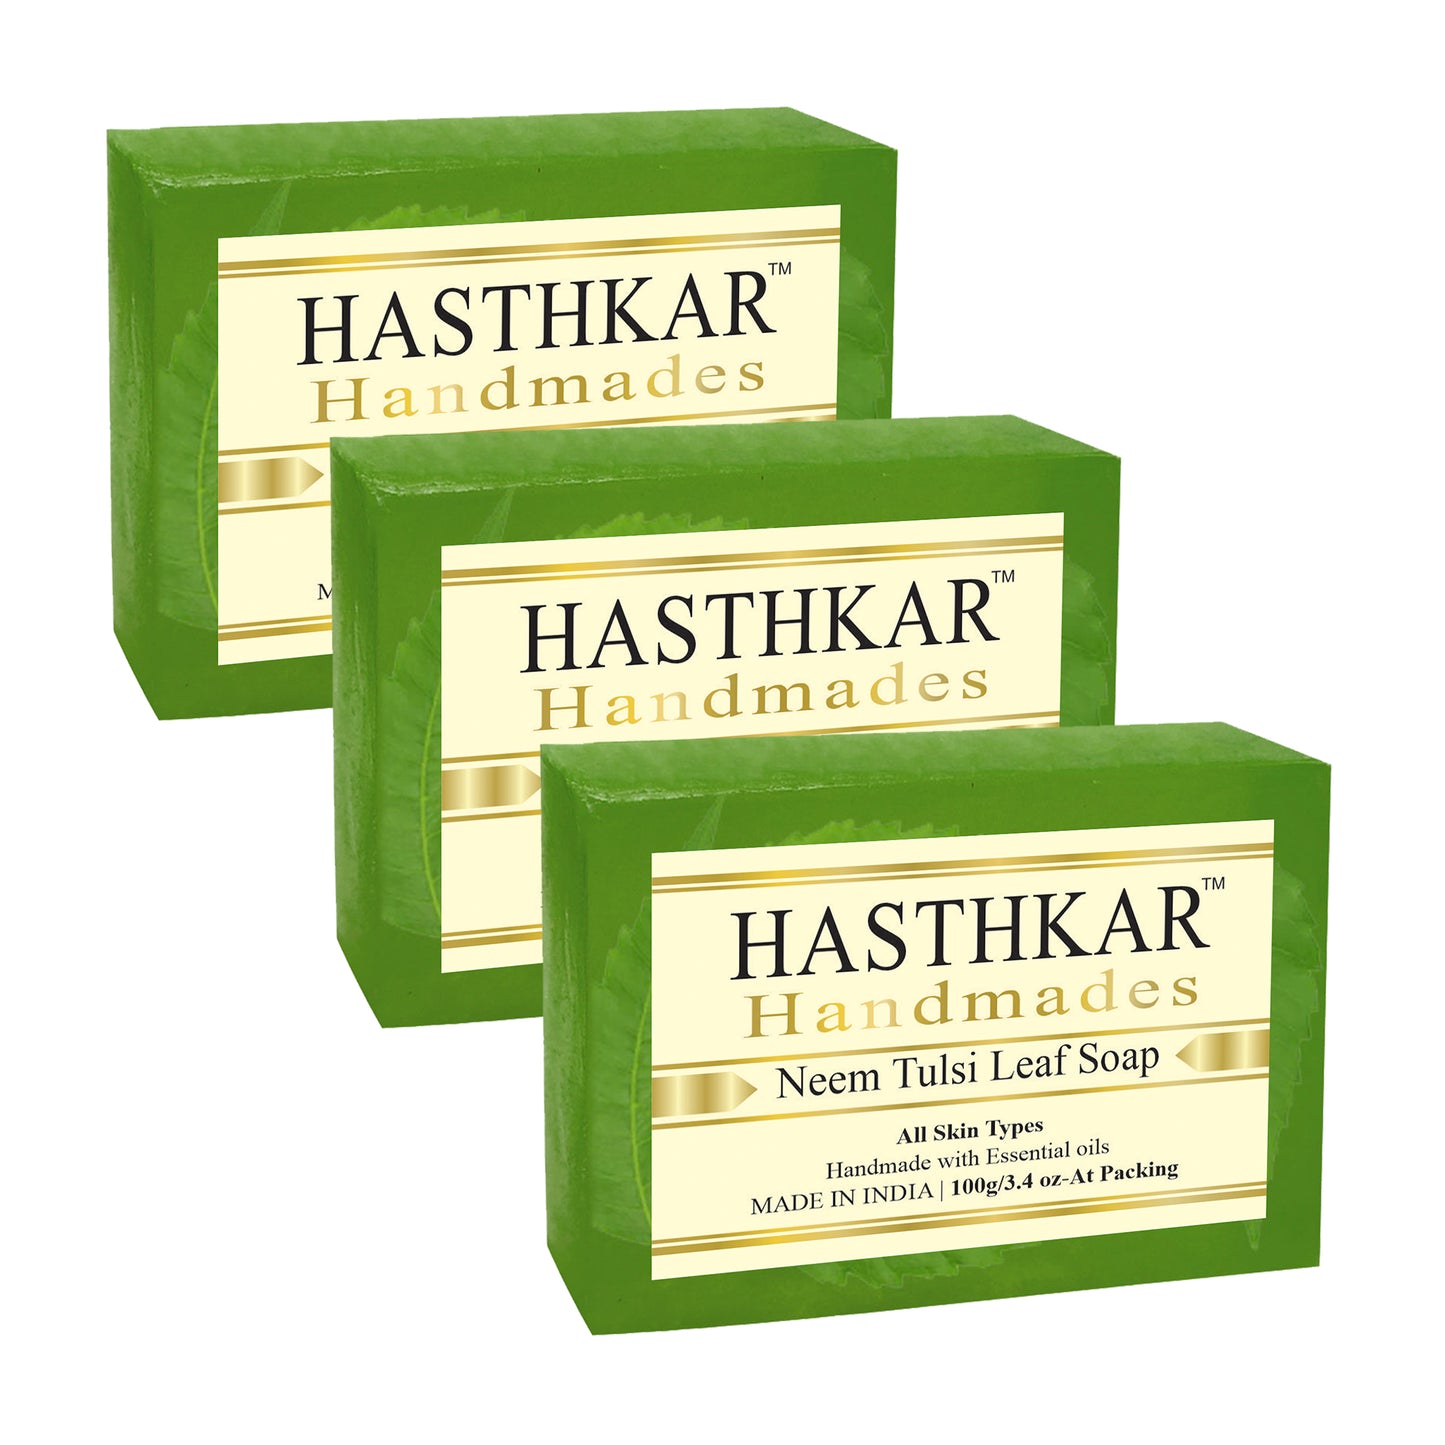 Hasthkar handmades neem tulsi leaf bathing soap men women pack of 3